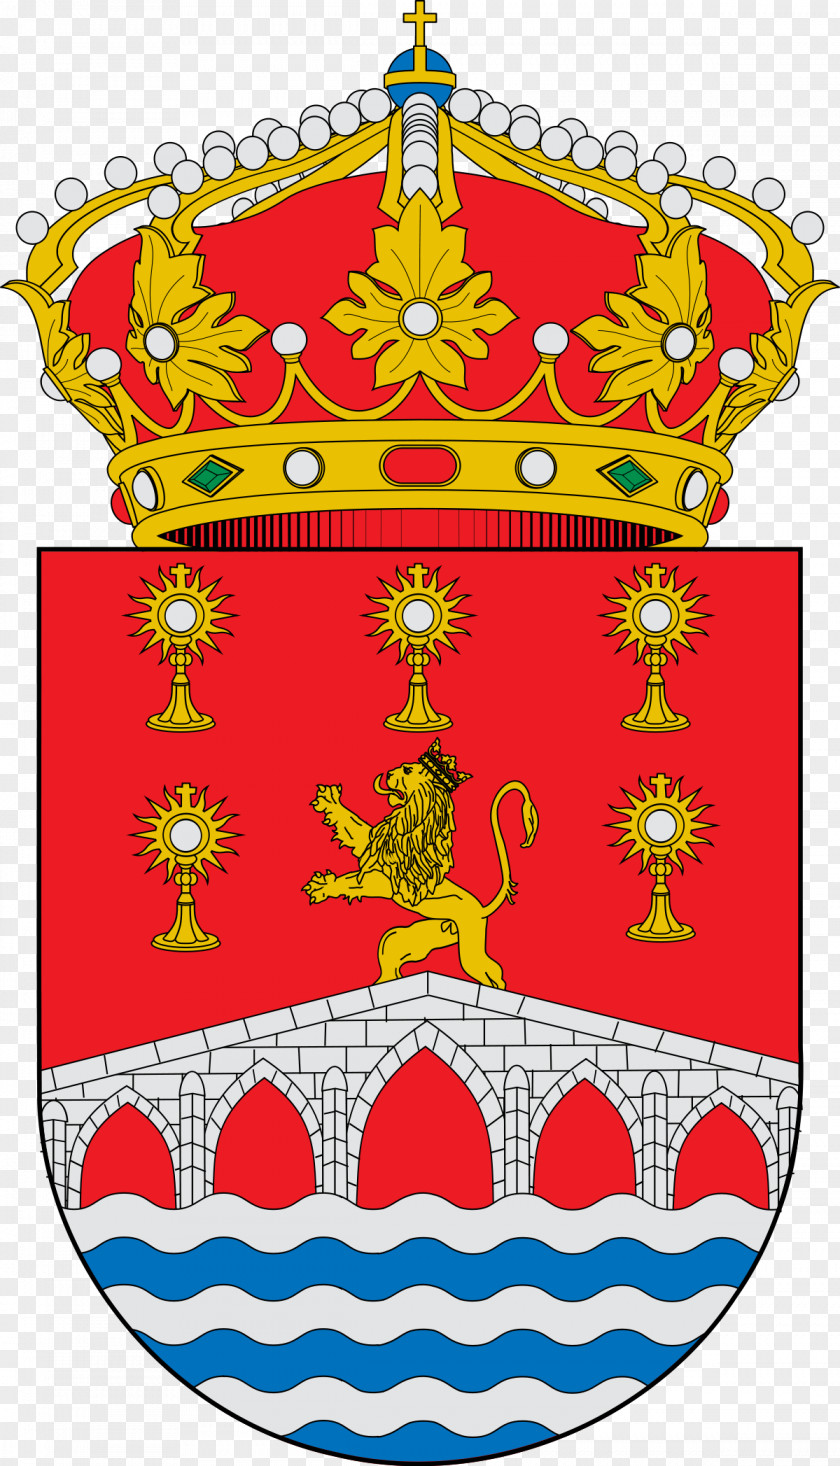 El Puente De Carlos Humanes Madrid Torrelaguna Coat Of Arms The Community PNG